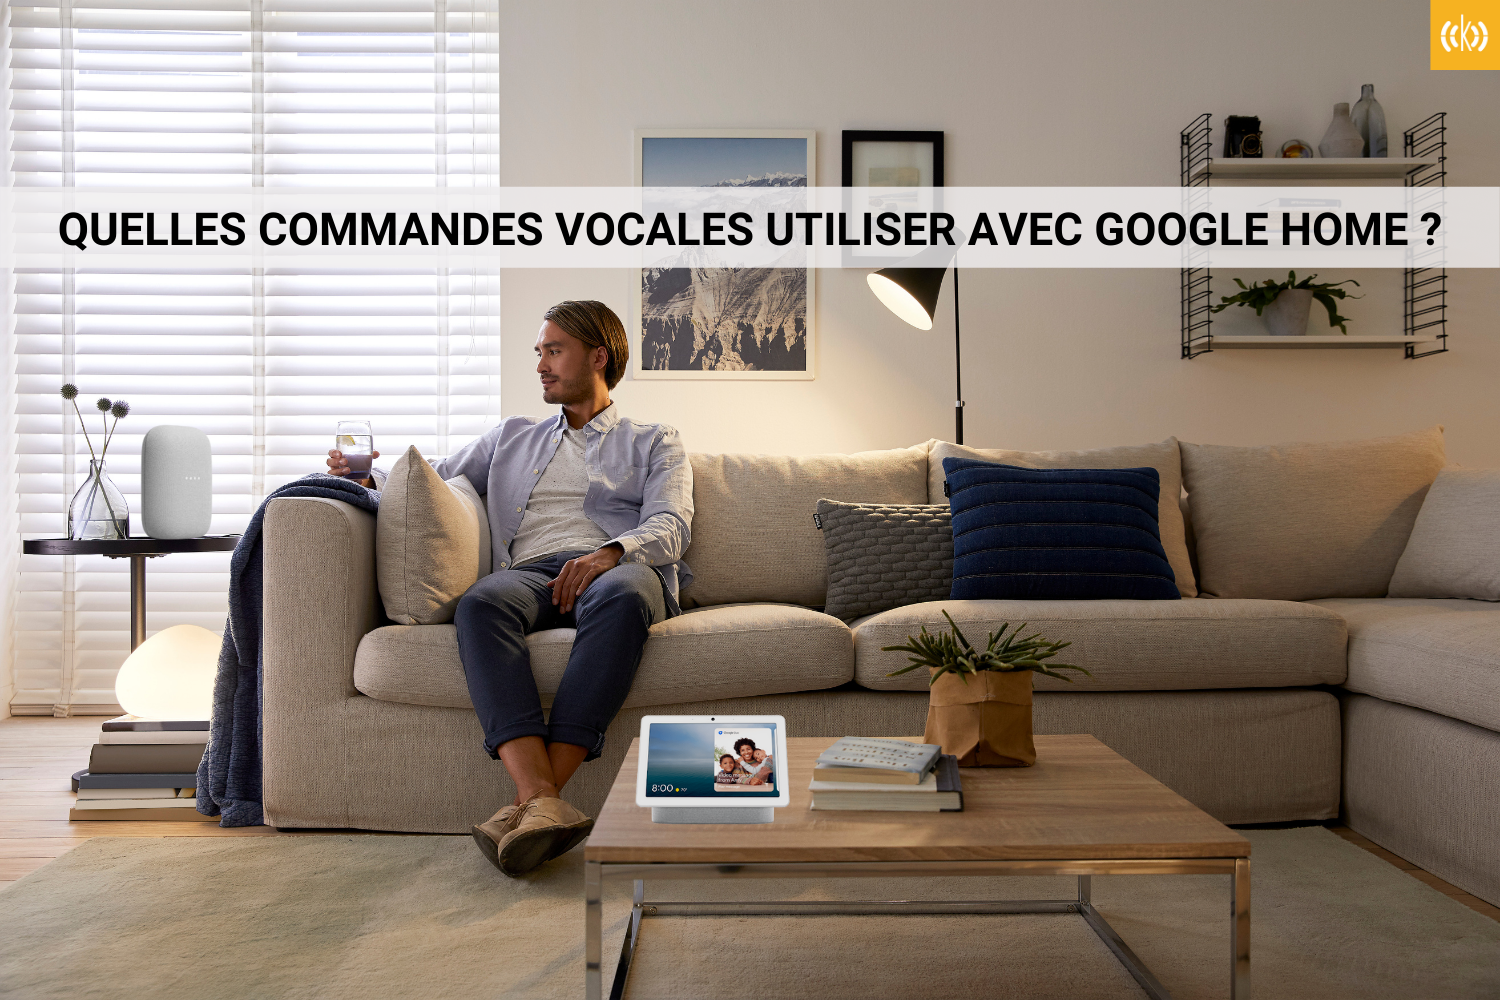 Quelles commandes vocales utiliser avec Google Home ?